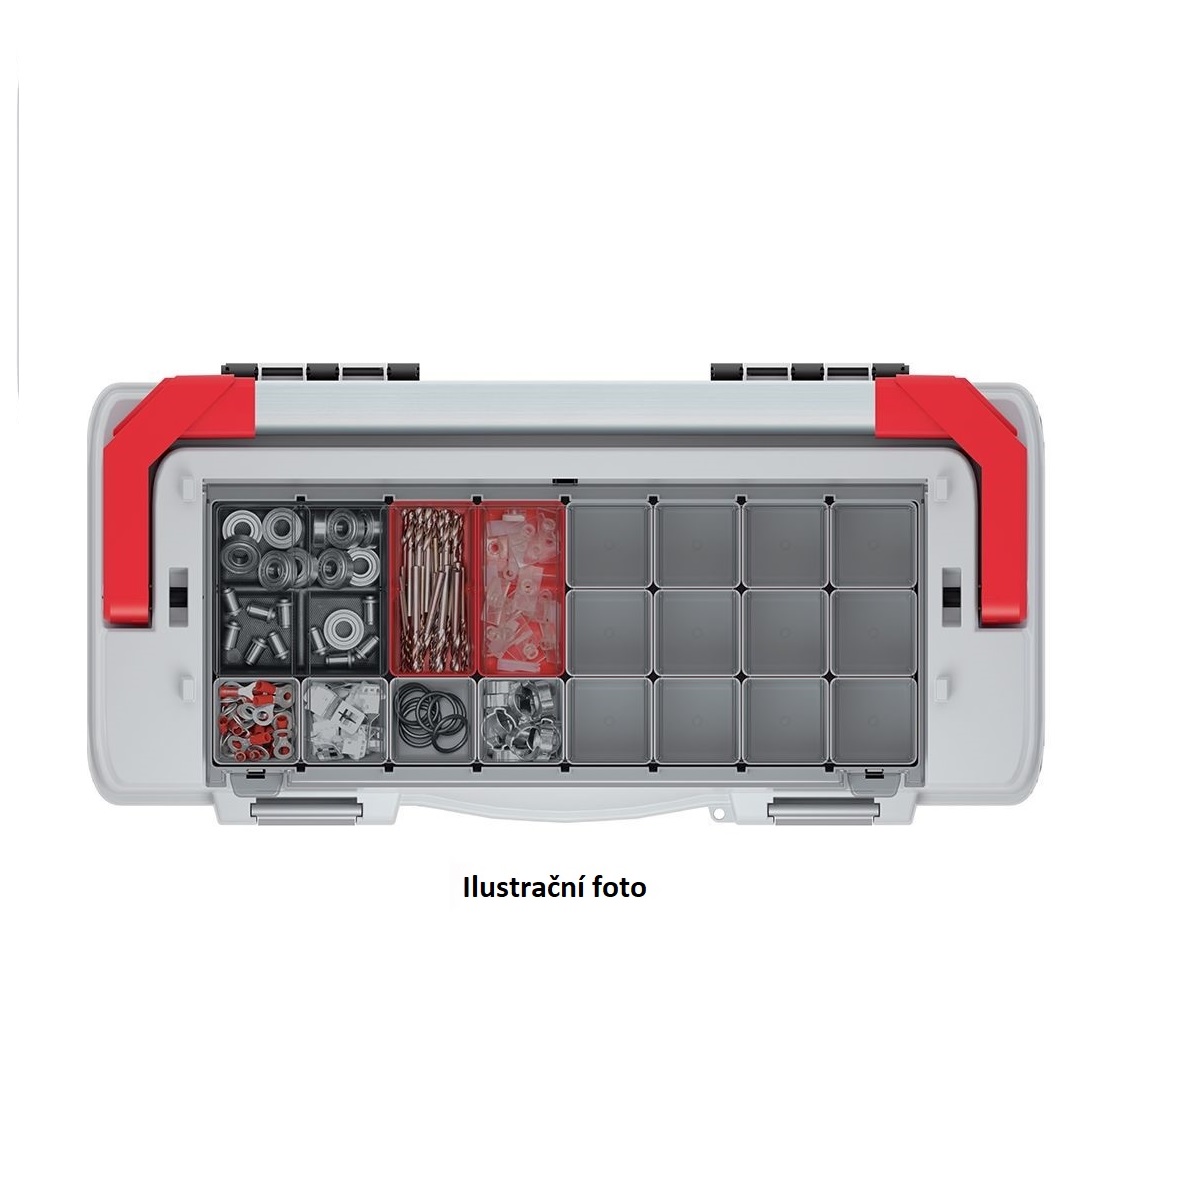 Kufr na nářadí s kov. držadlem a zámky EVO červený 548x274x286 (přepážky)